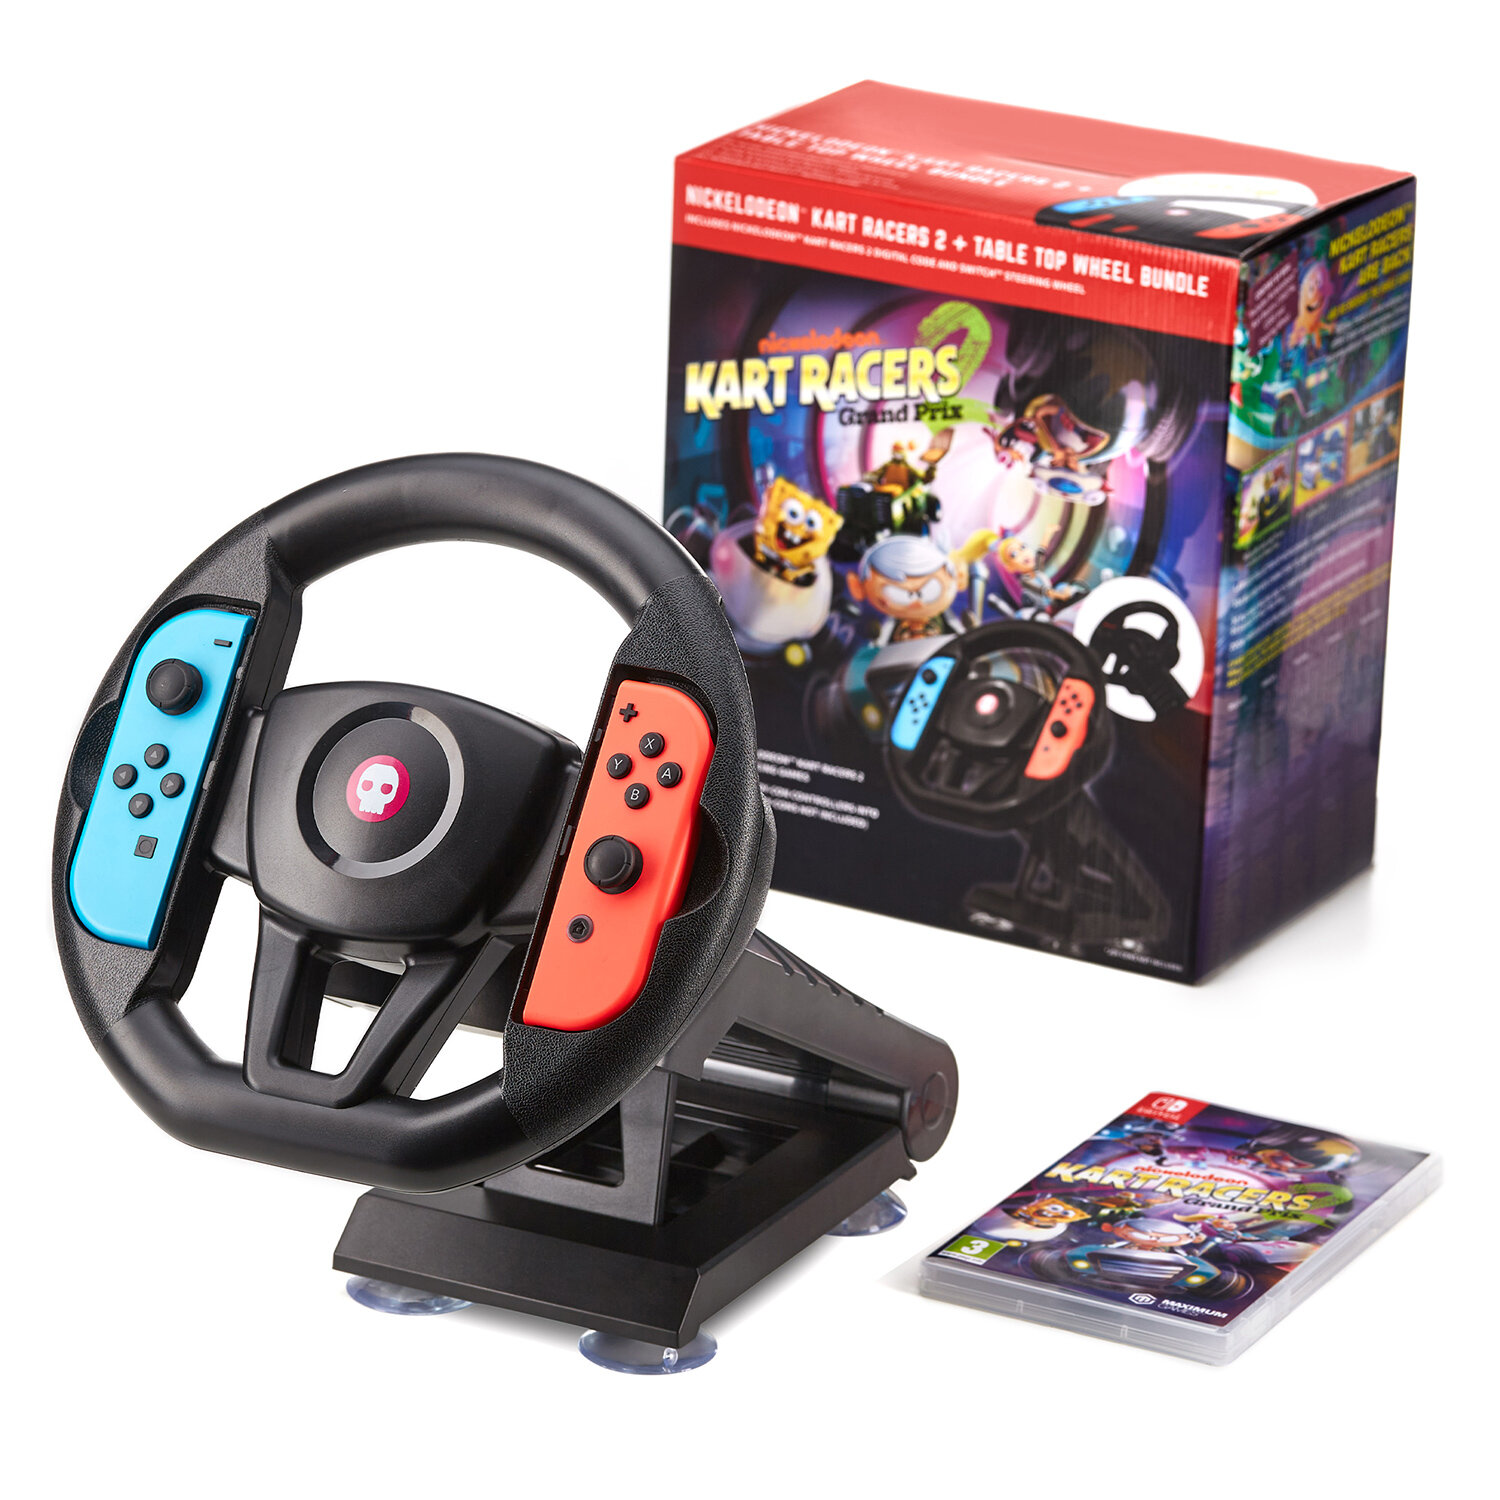 Игровой бандл Nintendo Switch: Nickelodeon Kart Racers 2 игра Nintendo Switch(цифровой ключ) + руль для Joy-Con